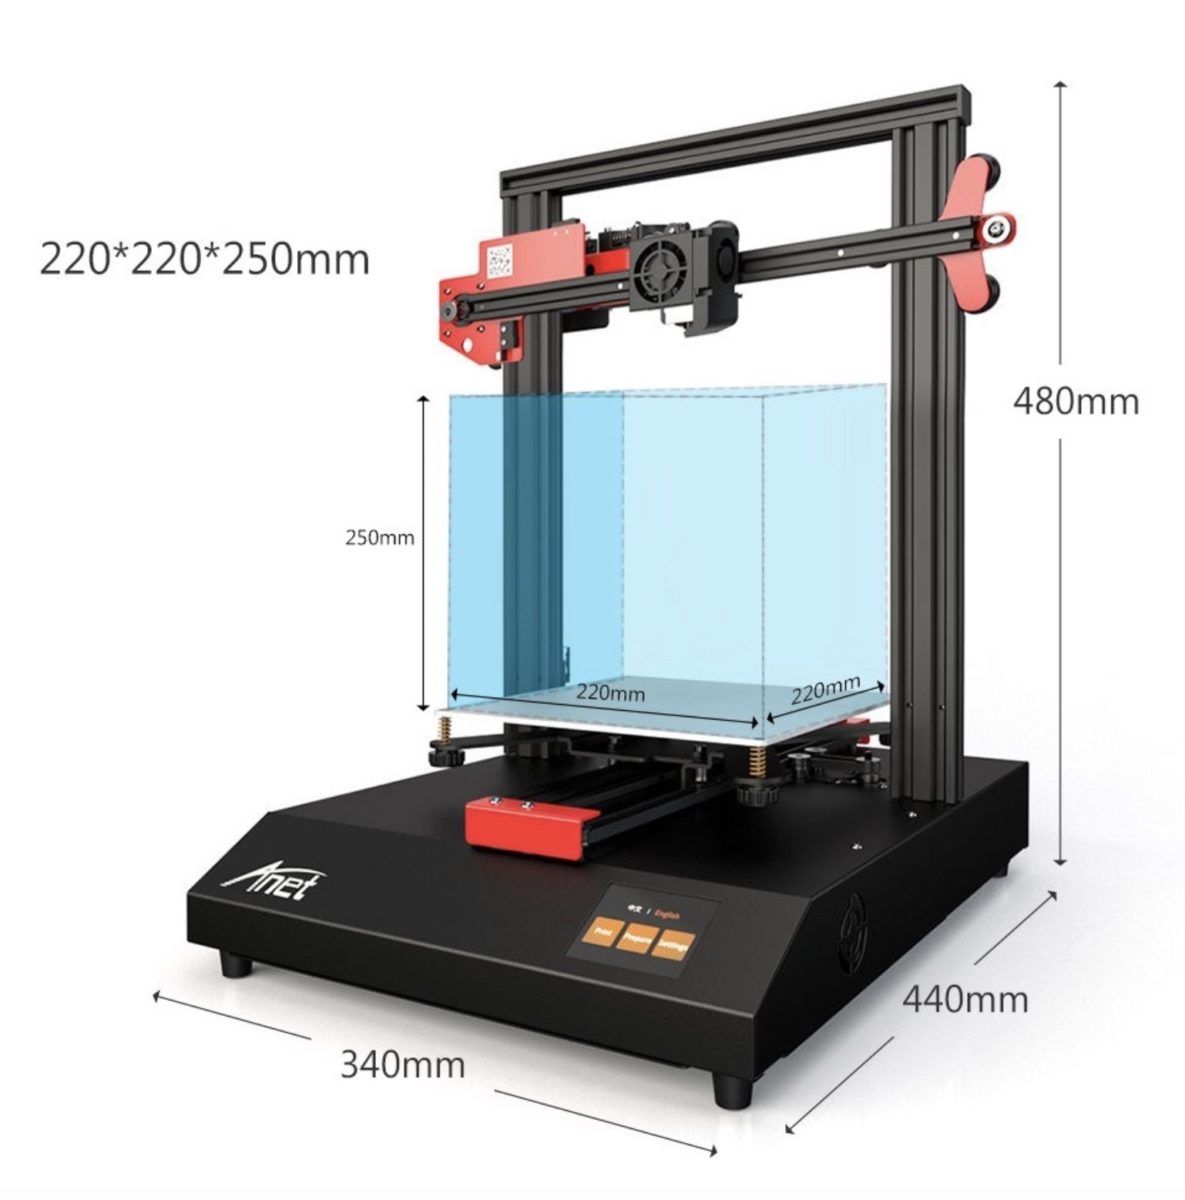 Anet ET4 stampante 3D touch: si monta in 10 minuti e costa meno di 150 Euro